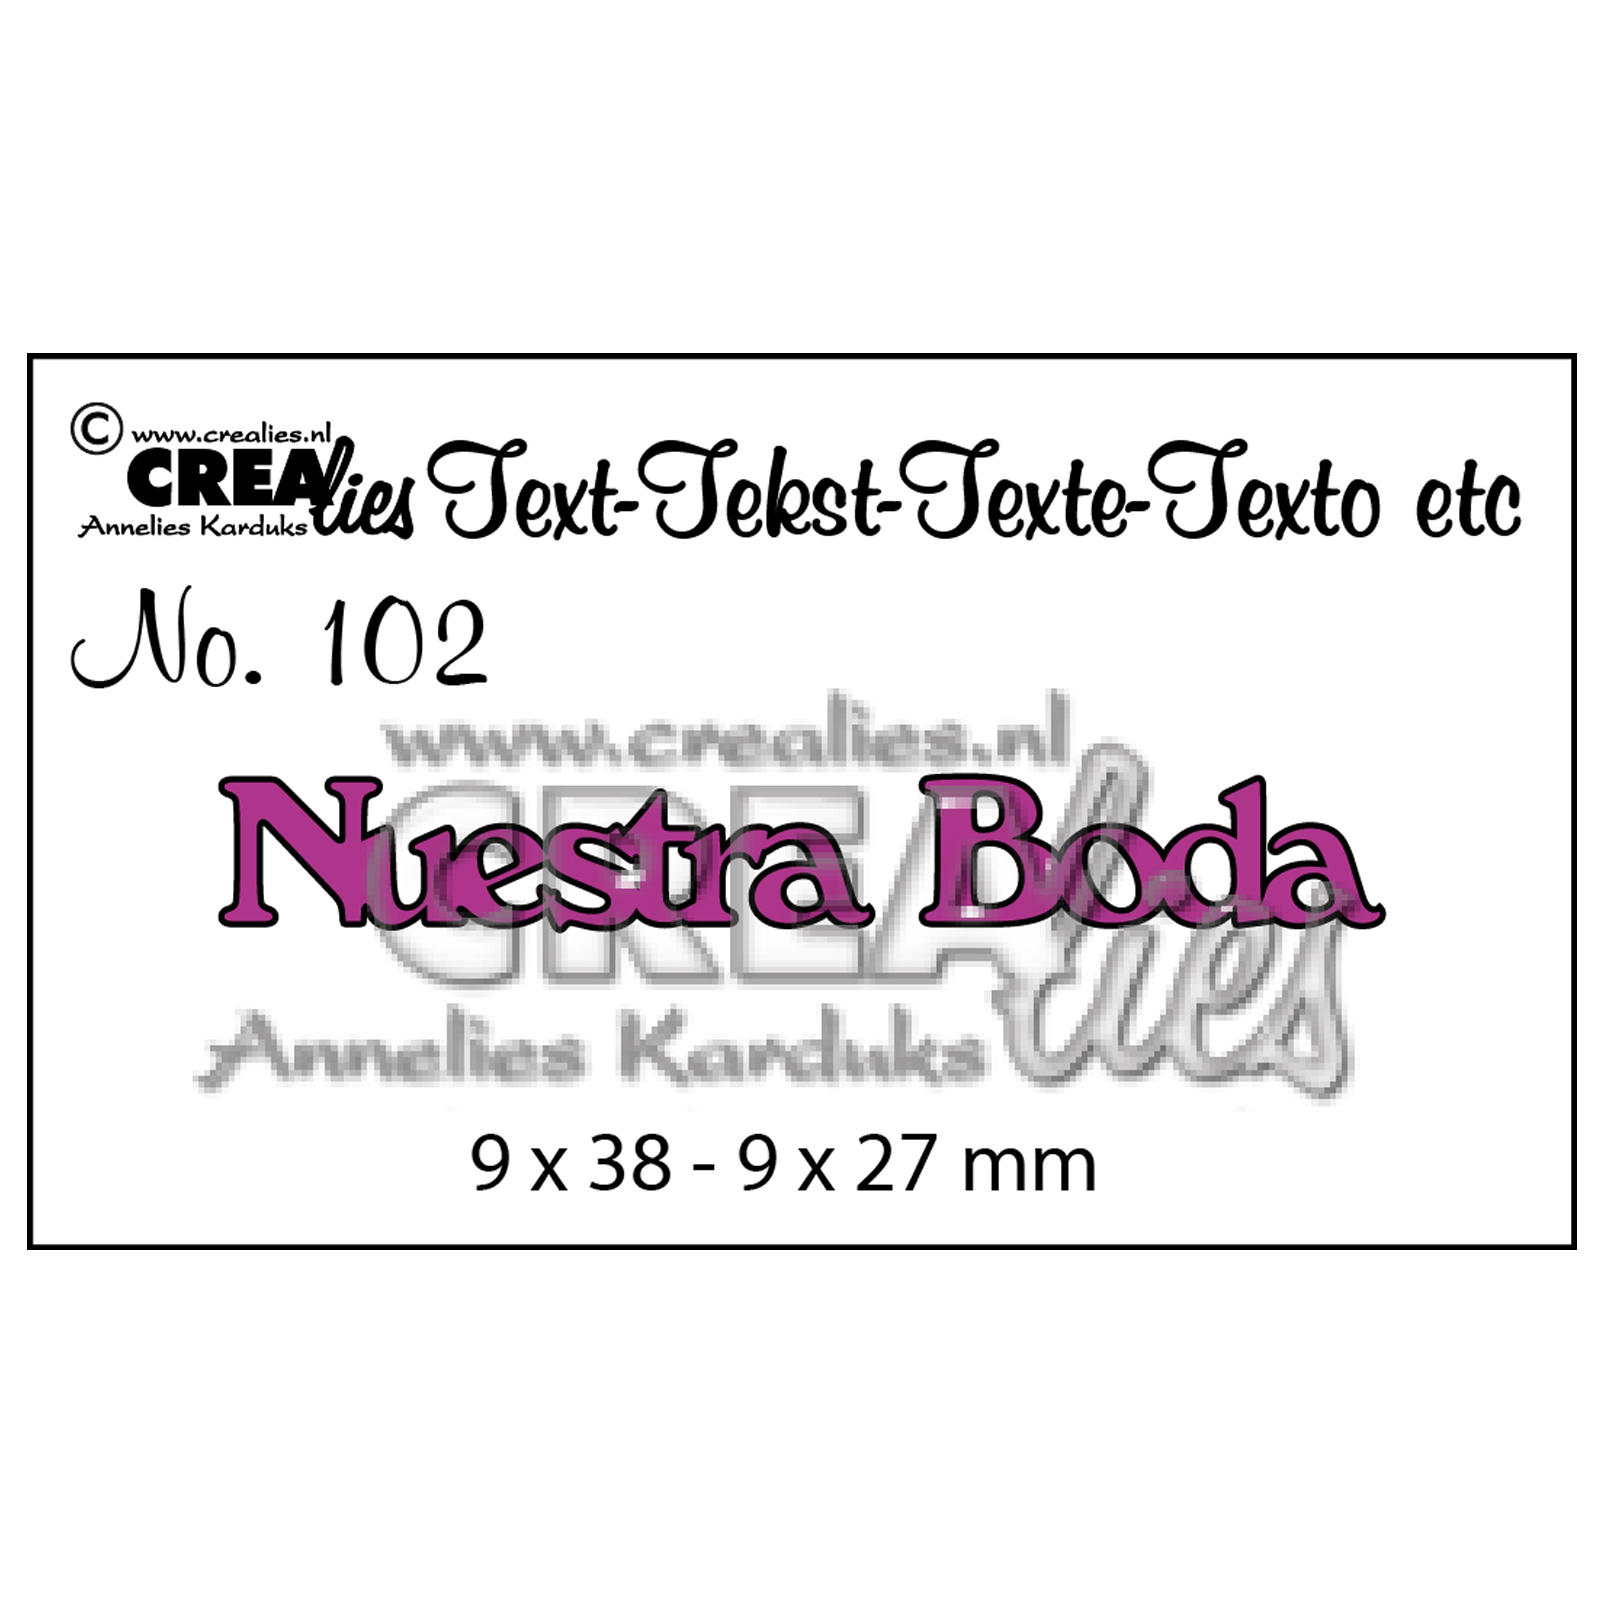 Crealies • Plantilla de corte con texto en Español no.102 "Nuestra Boda"